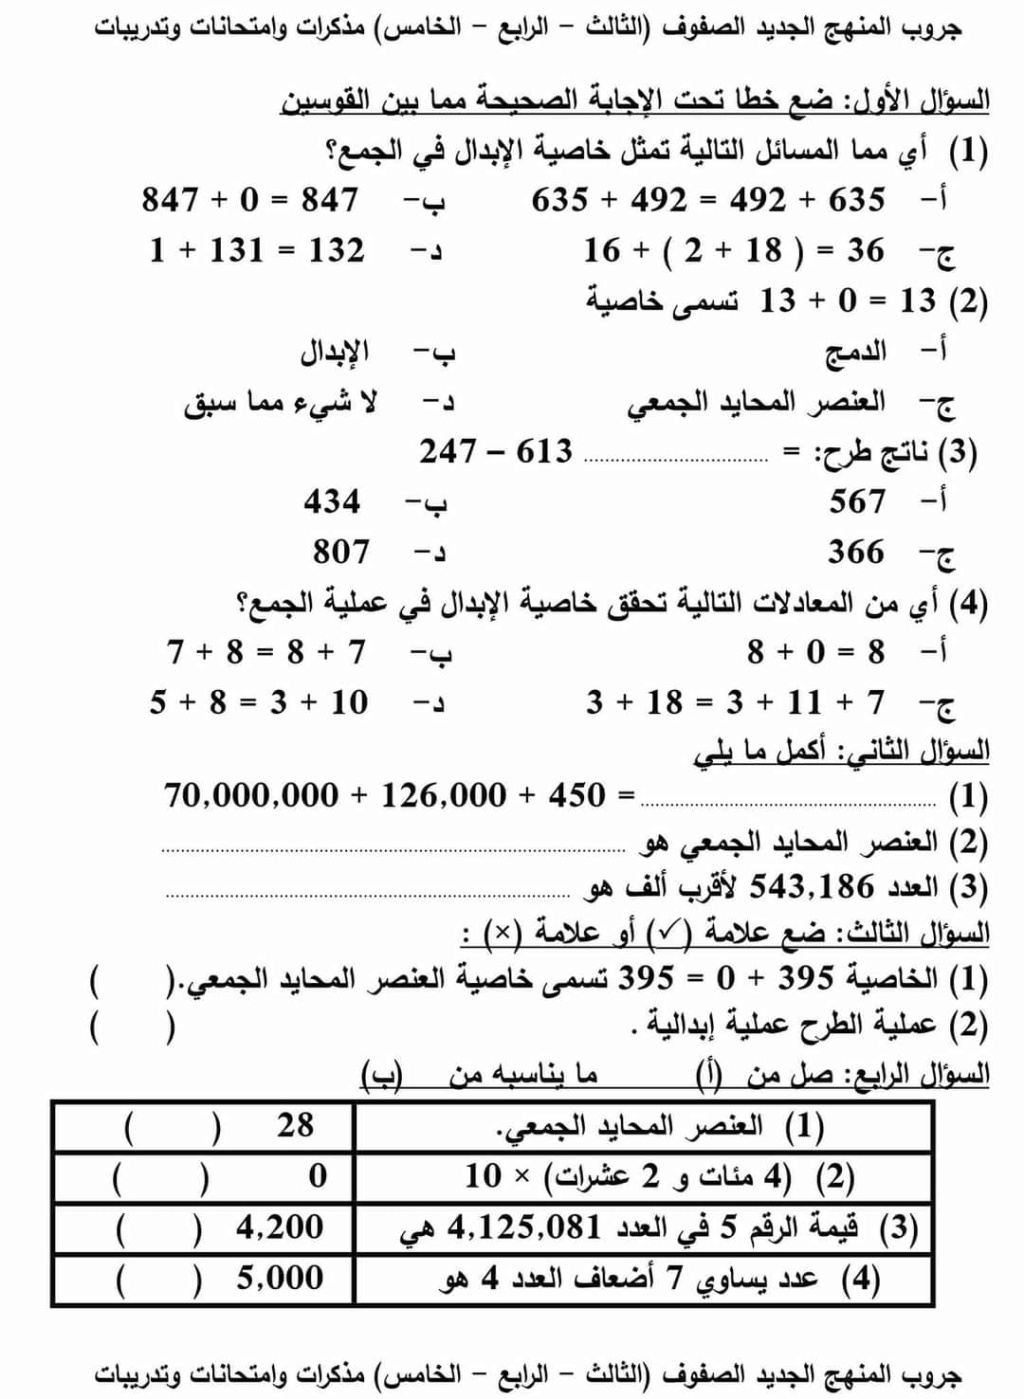 رياضيات - المراجعة النهائية - رياضيات - الصف الرابع والخامس مطابقة لمواصفات الامتحان٢٠٢٢ مع نموذج إجابة  3323